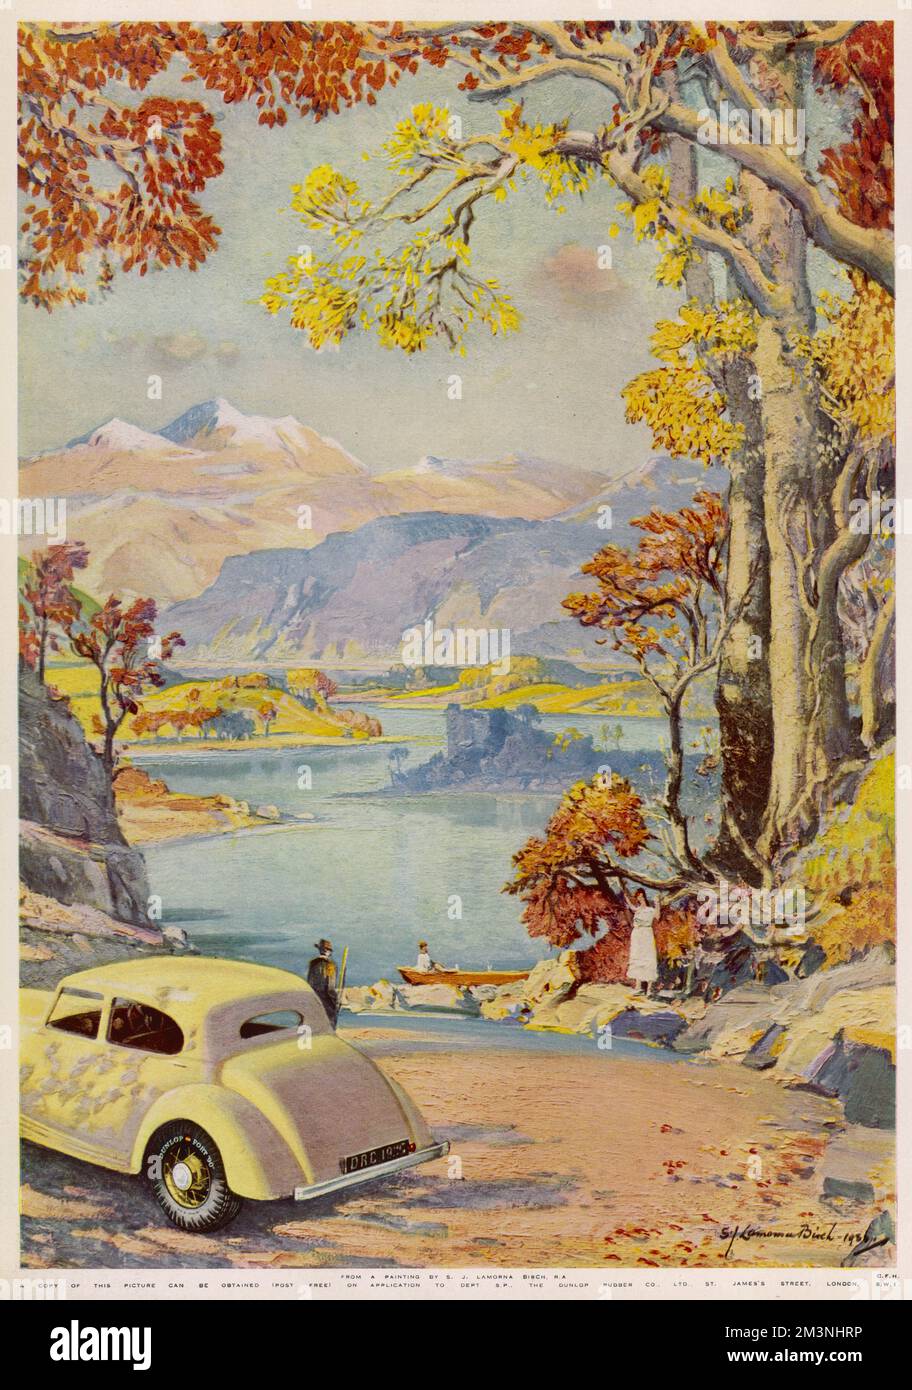 Werbung für Dunlop-Reifen, die ein Oldtimer mit den obligatorischen Reifen zeigen, das an einem See geparkt ist, der sich in einer atemberaubenden Landschaft befindet. Datum: 1936 Stockfoto